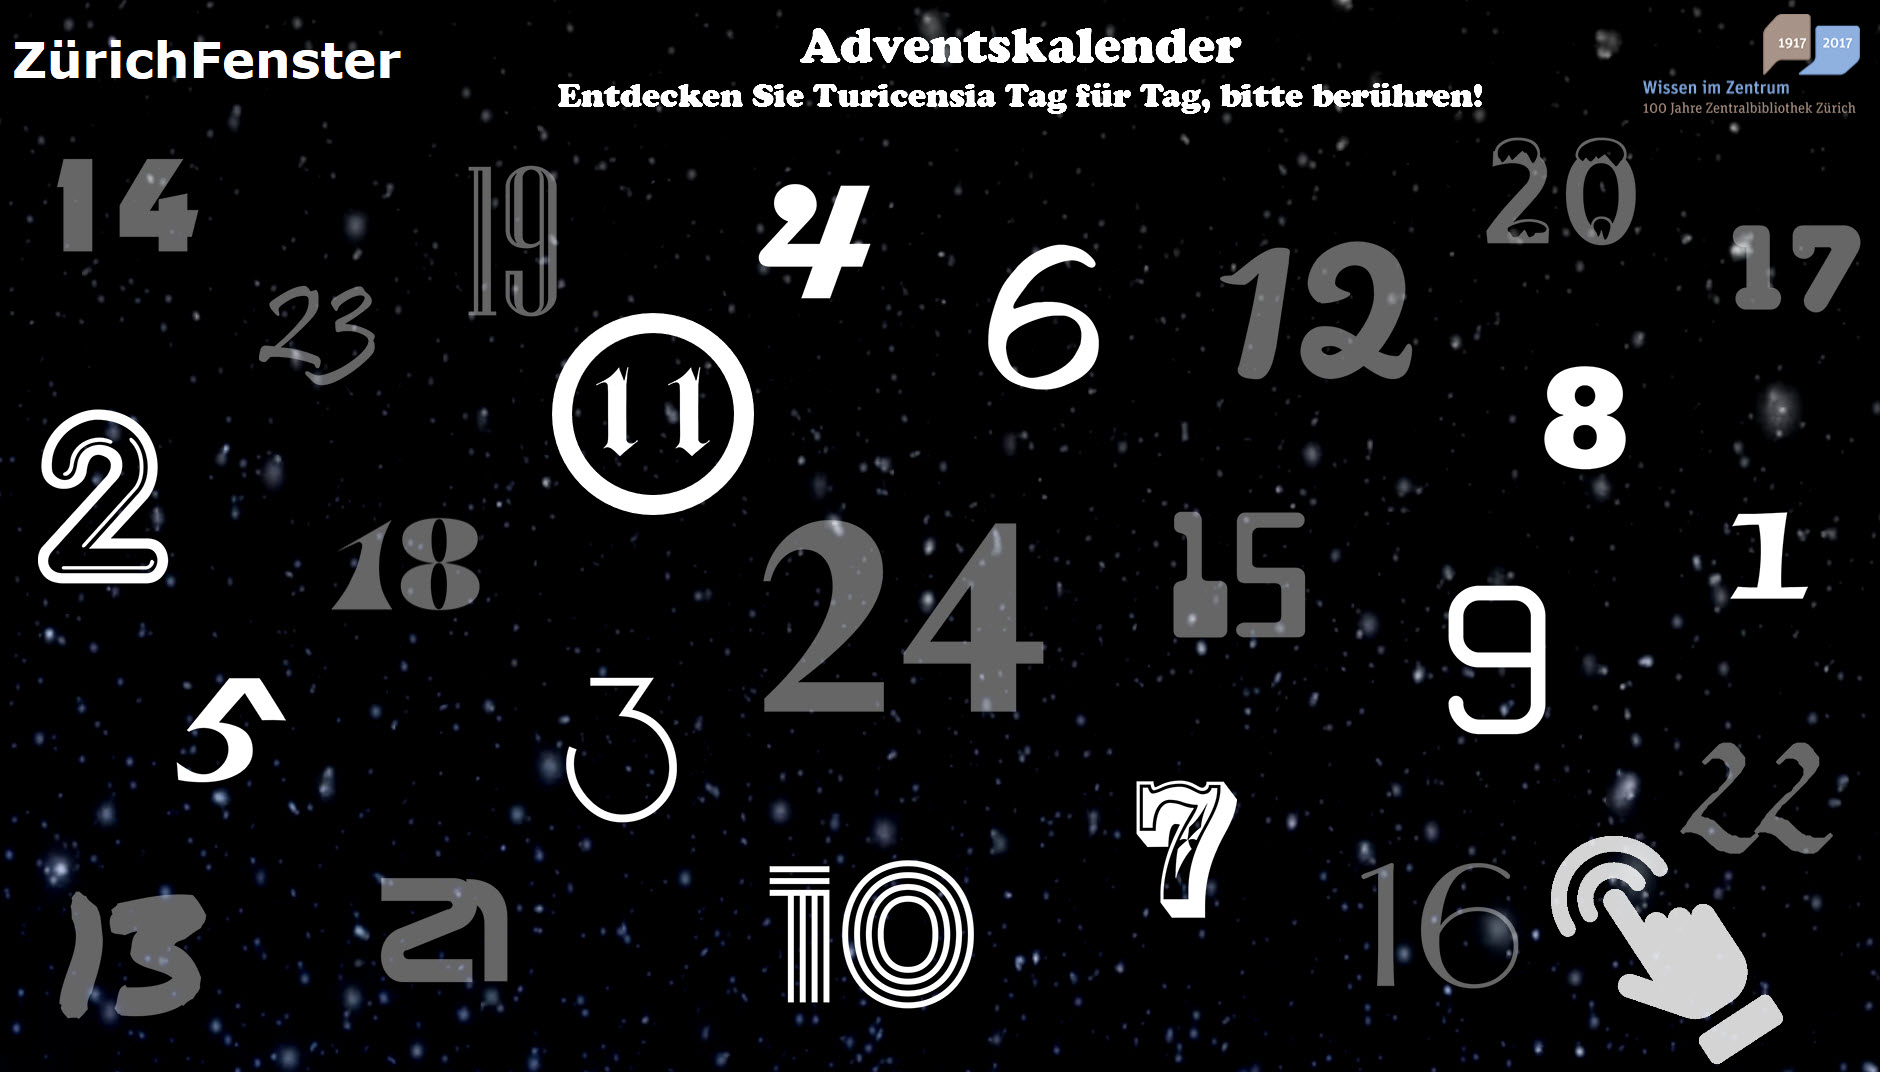 ZürichFenster, Adventszeit, Startseite des interaktiven Adventskalenders in der Turicensia Lounge